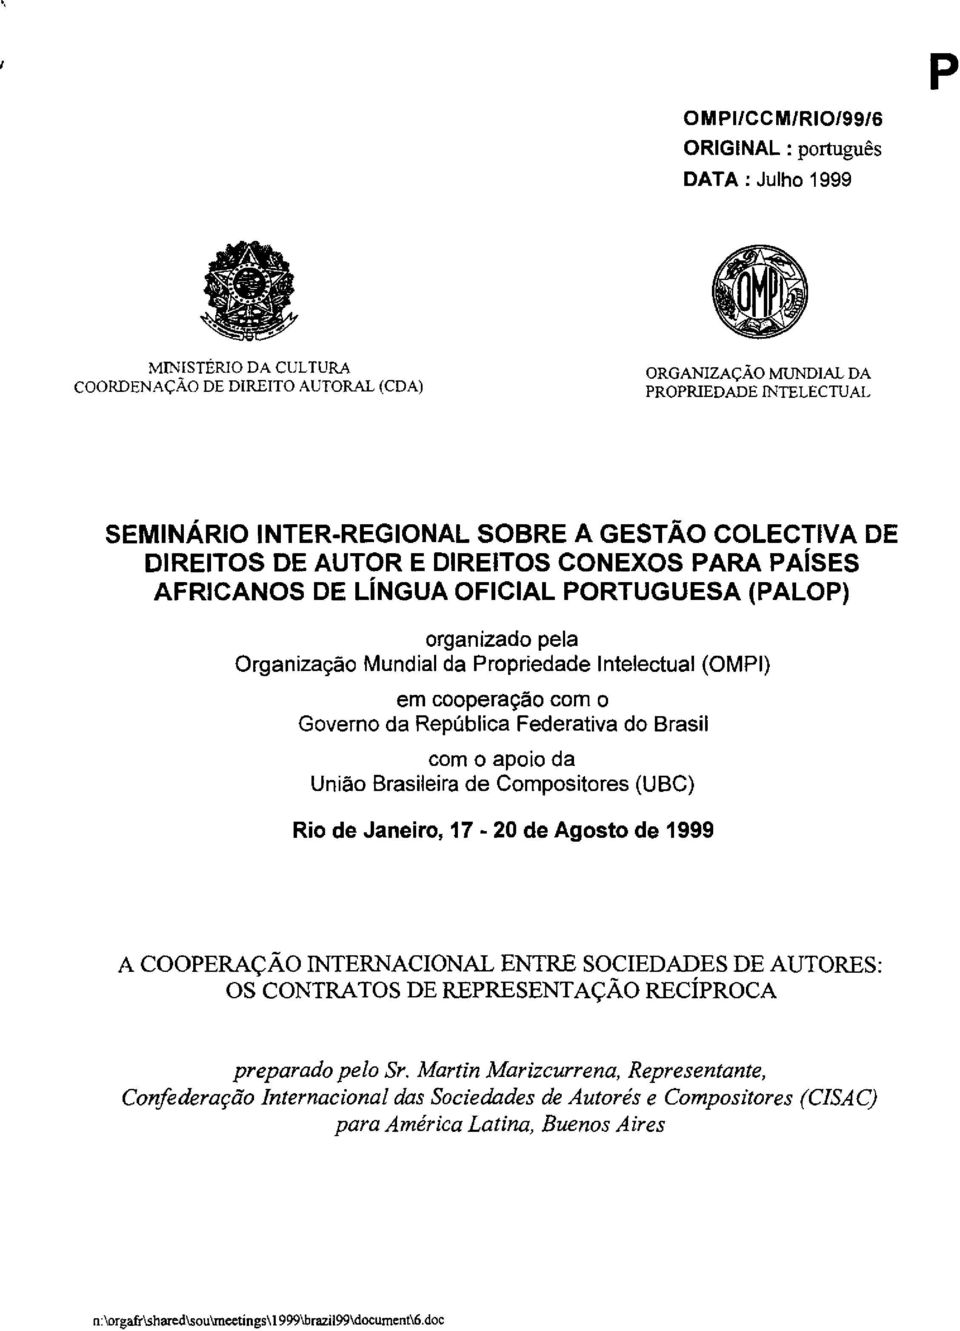 com 0 Governo da Republica Federativa do Brasil com 0 apoio da Uniao Brasileira de Compositores (UBC) Rio de Janeiro, 17-20 de Agosto de 1999 A COOPERACAo INTERNACIONAL ENTRE SOCIEDADES DE AUTORES: